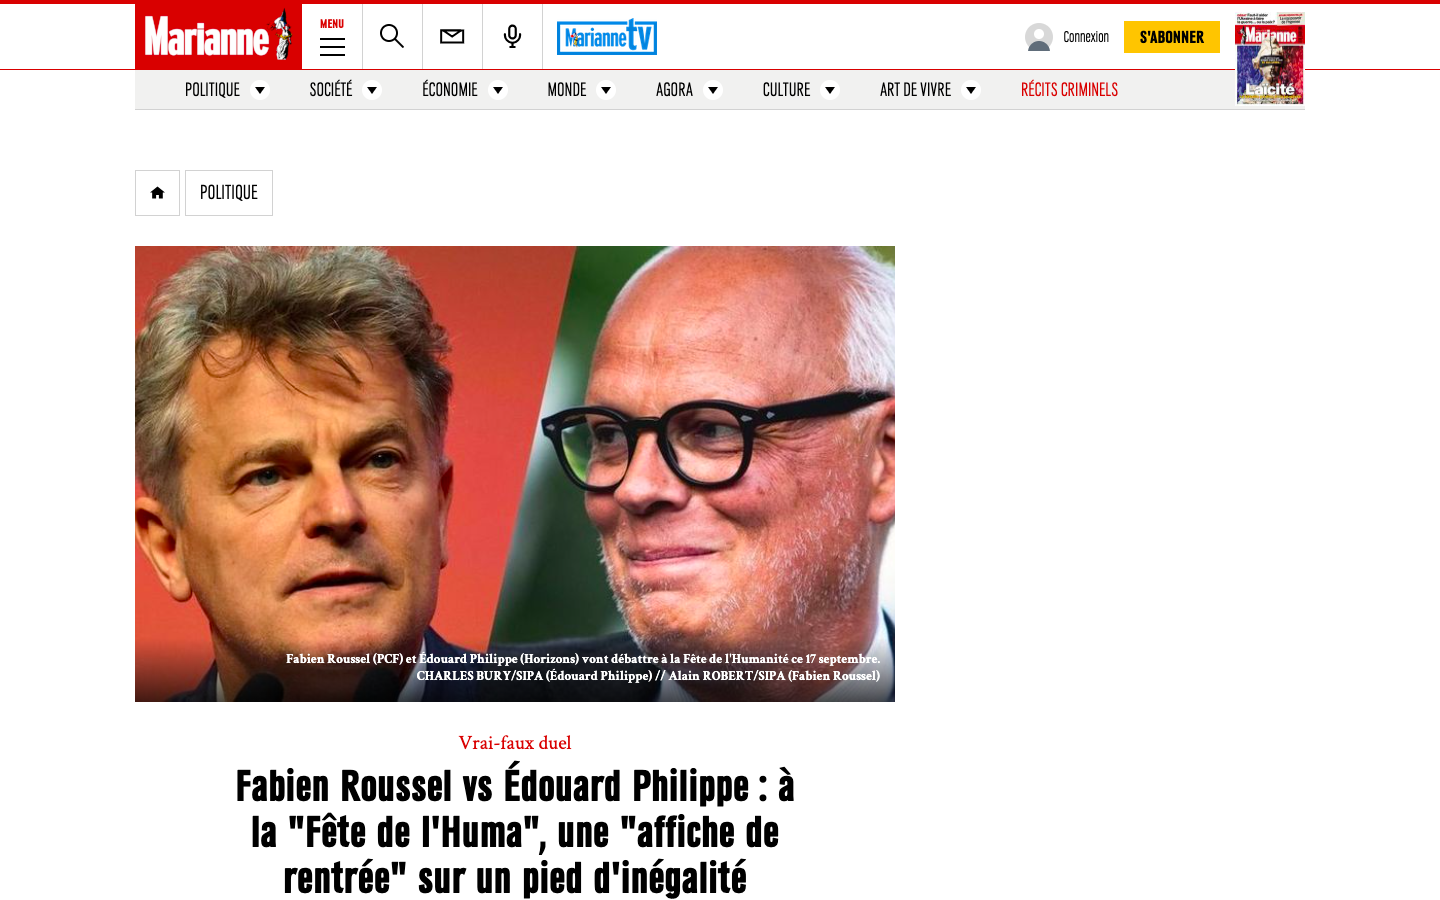 Marianne - Fabien Roussel vs Édouard Philippe : à la "Fête de l'Huma", une "affiche de rentrée" sur un pied d'inégalité